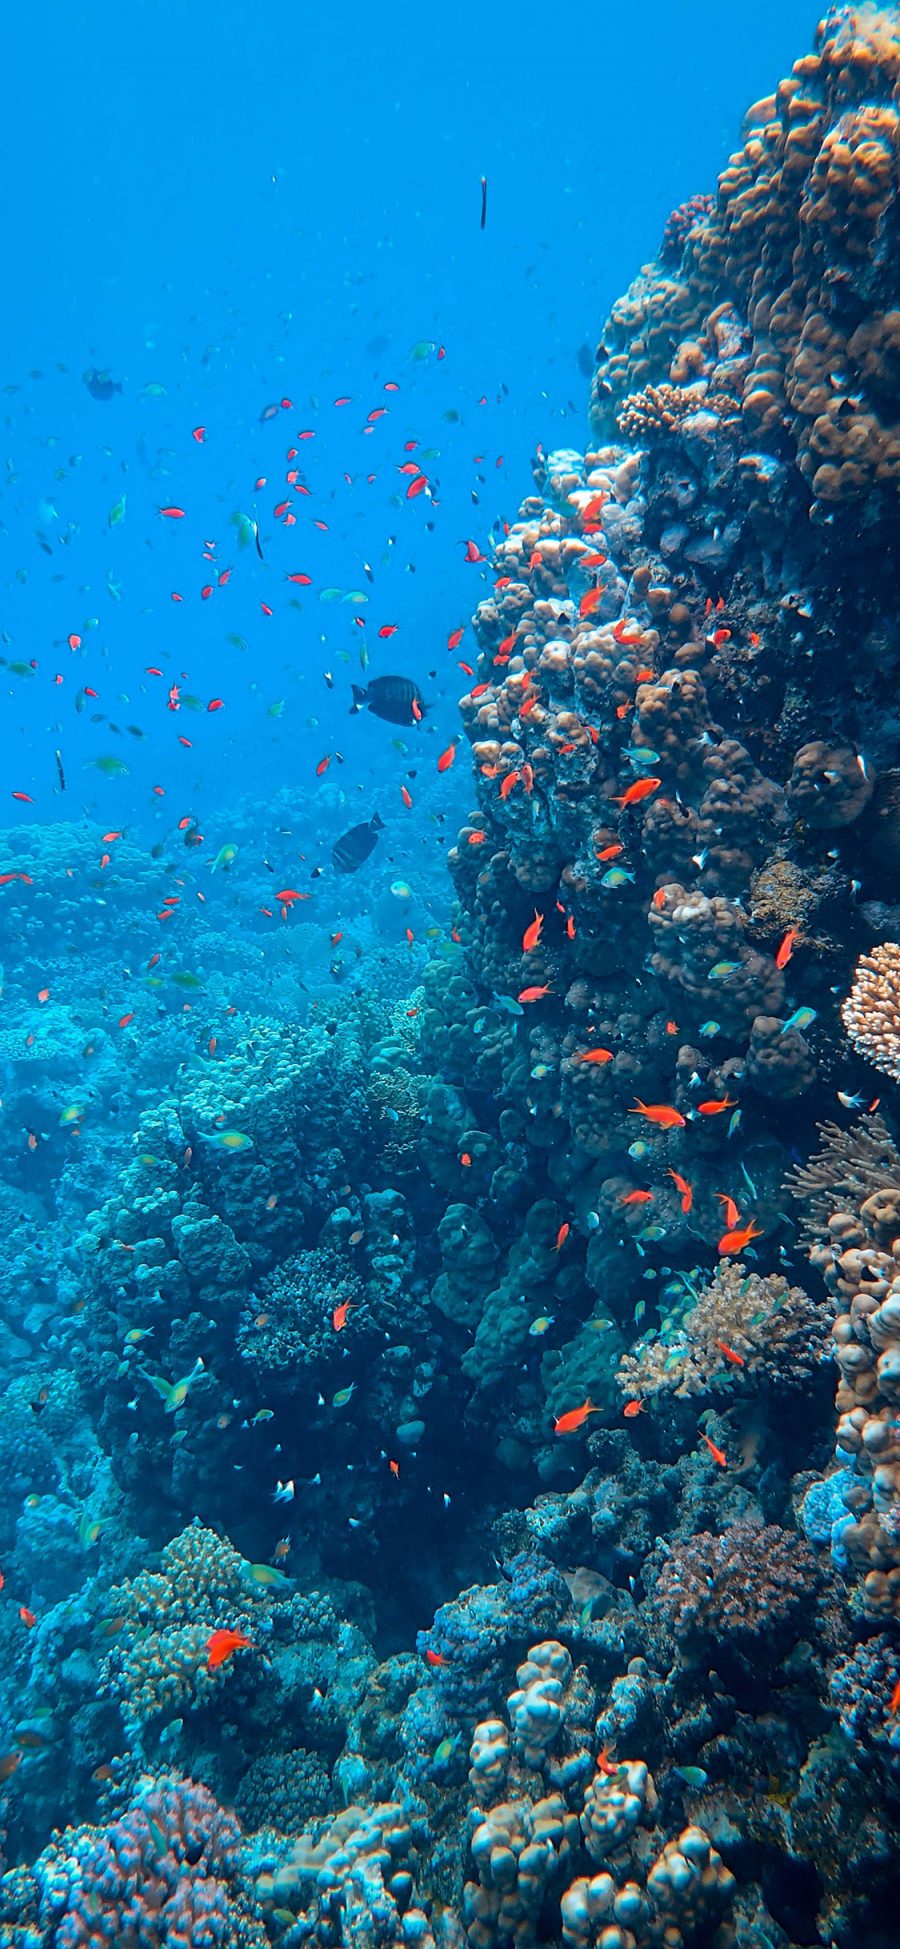 [2436×1125]珊瑚 珊瑚虫 鱼群 珊瑚礁 苹果手机壁纸图片